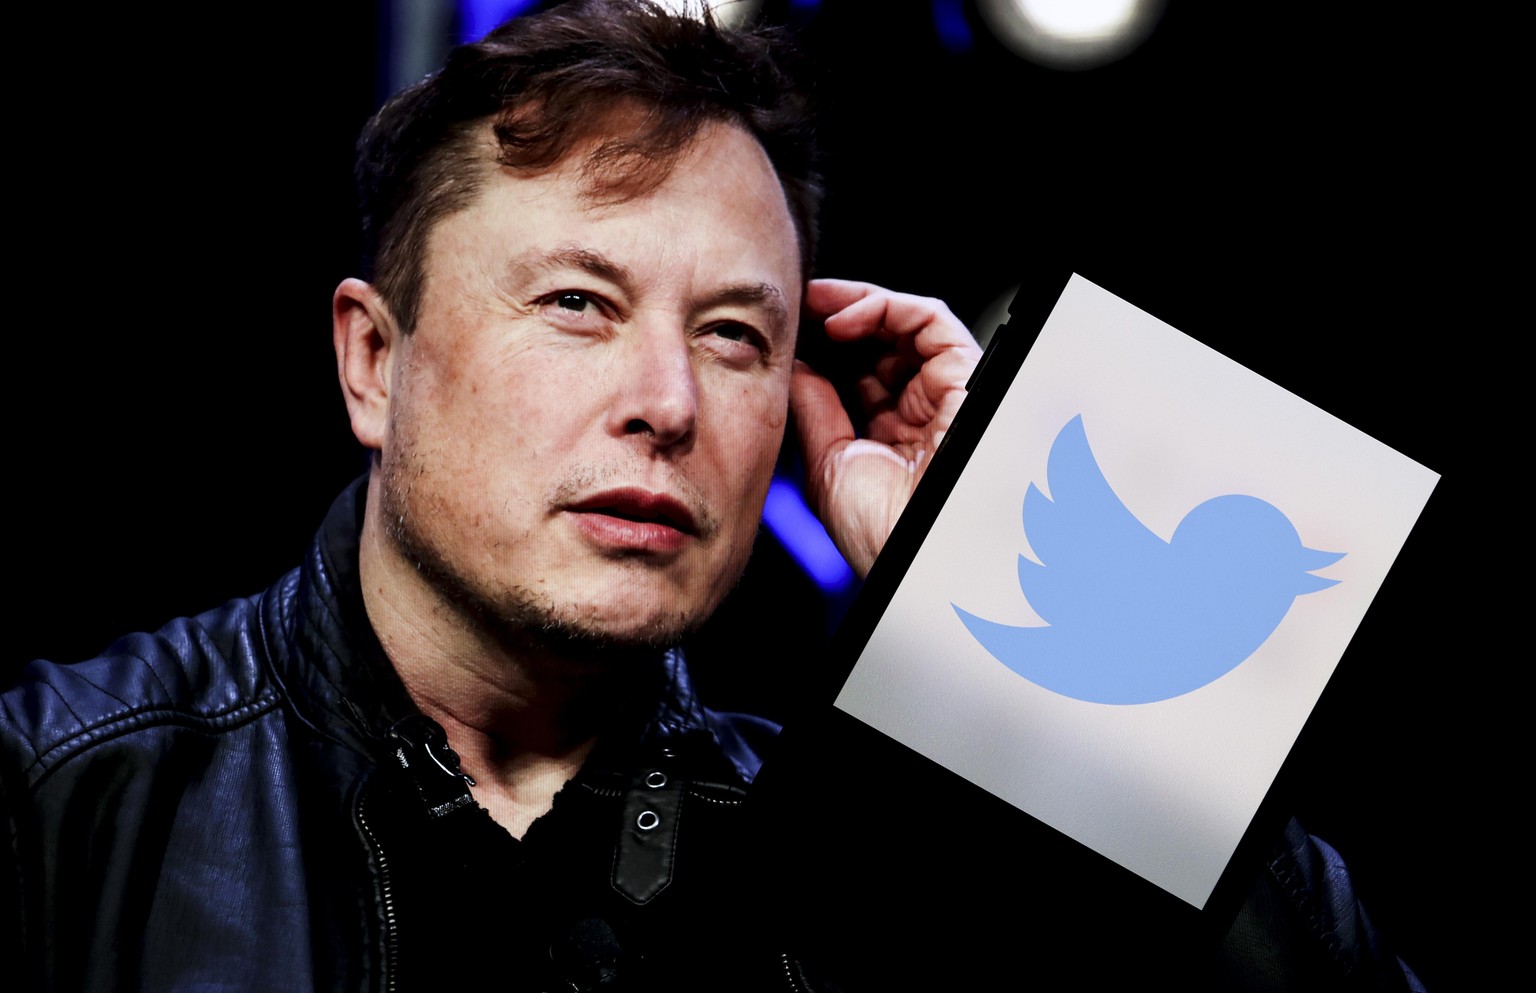 Elon Musk ist die reichste Person der Welt und möchte Twitter übernehmen.